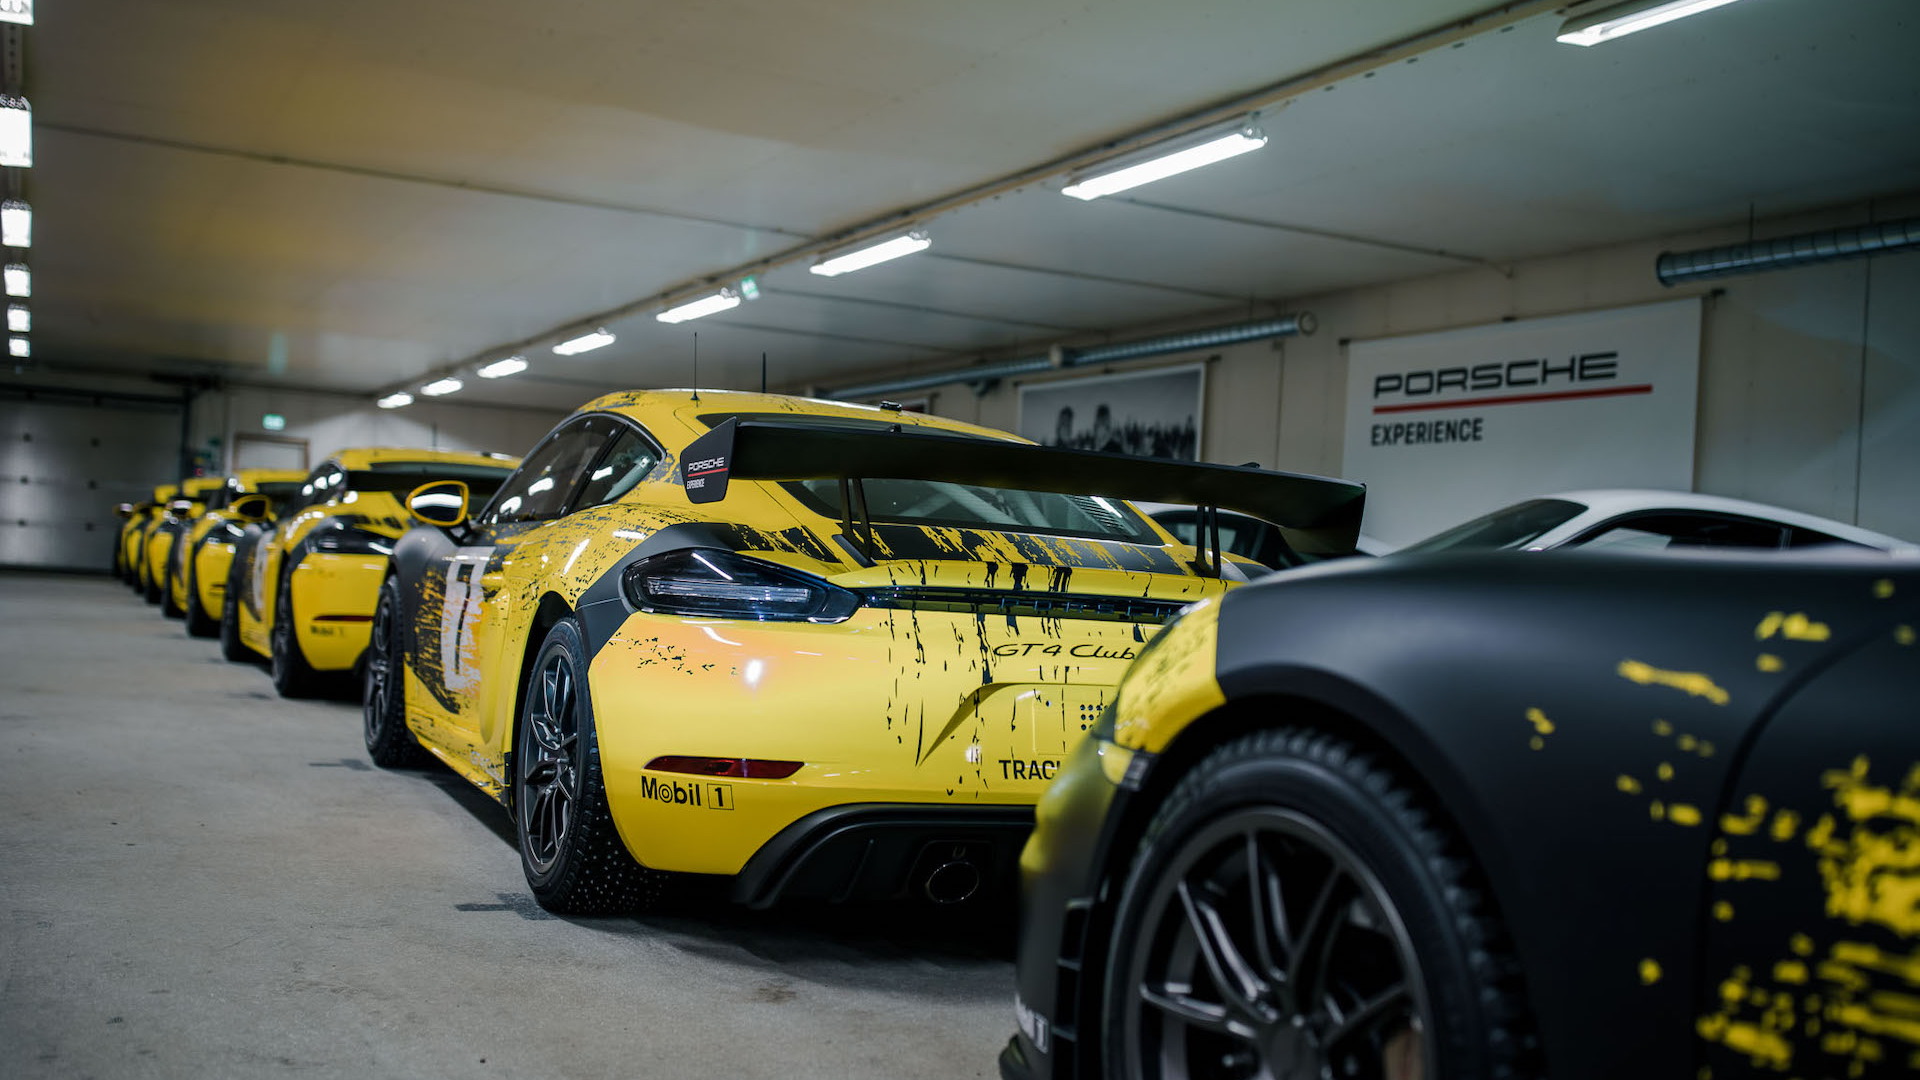 Porsche Ice Force Pro garage